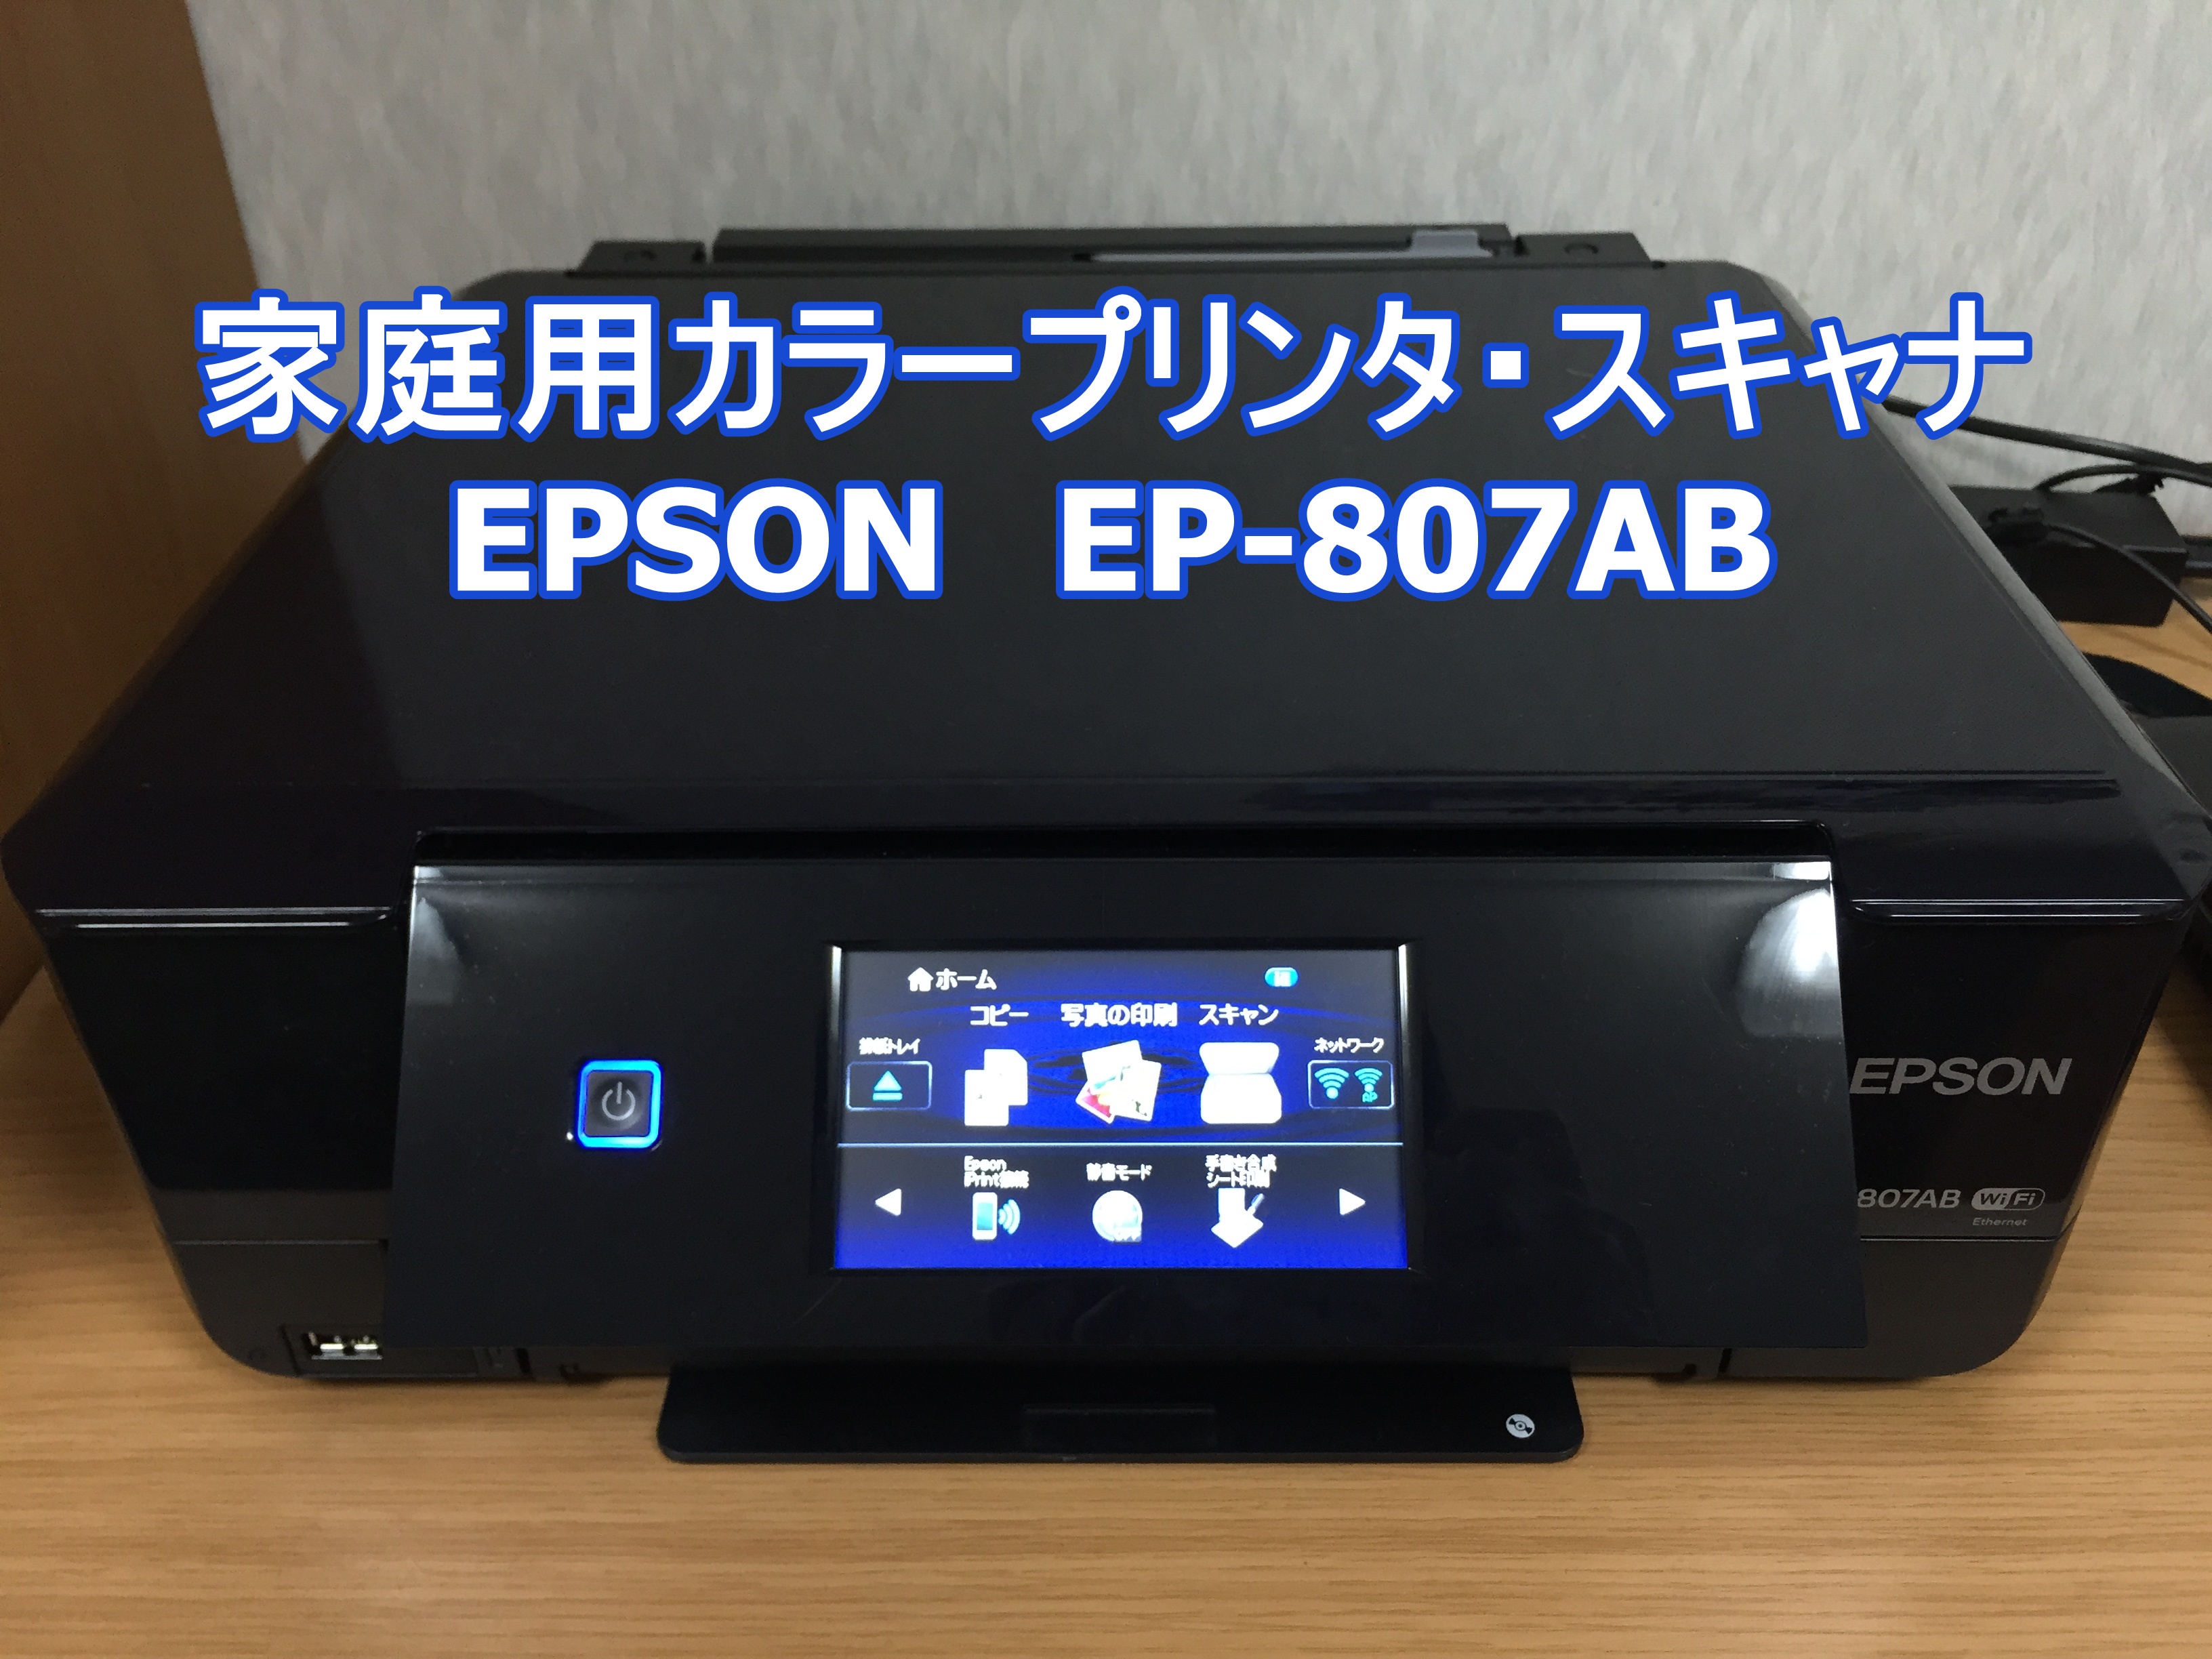 旧モデル エプソン インクジェット複合機 Colorio EP-977A3 無線 有線 スマートフォンプリント Wi-Fi Direct A - 3